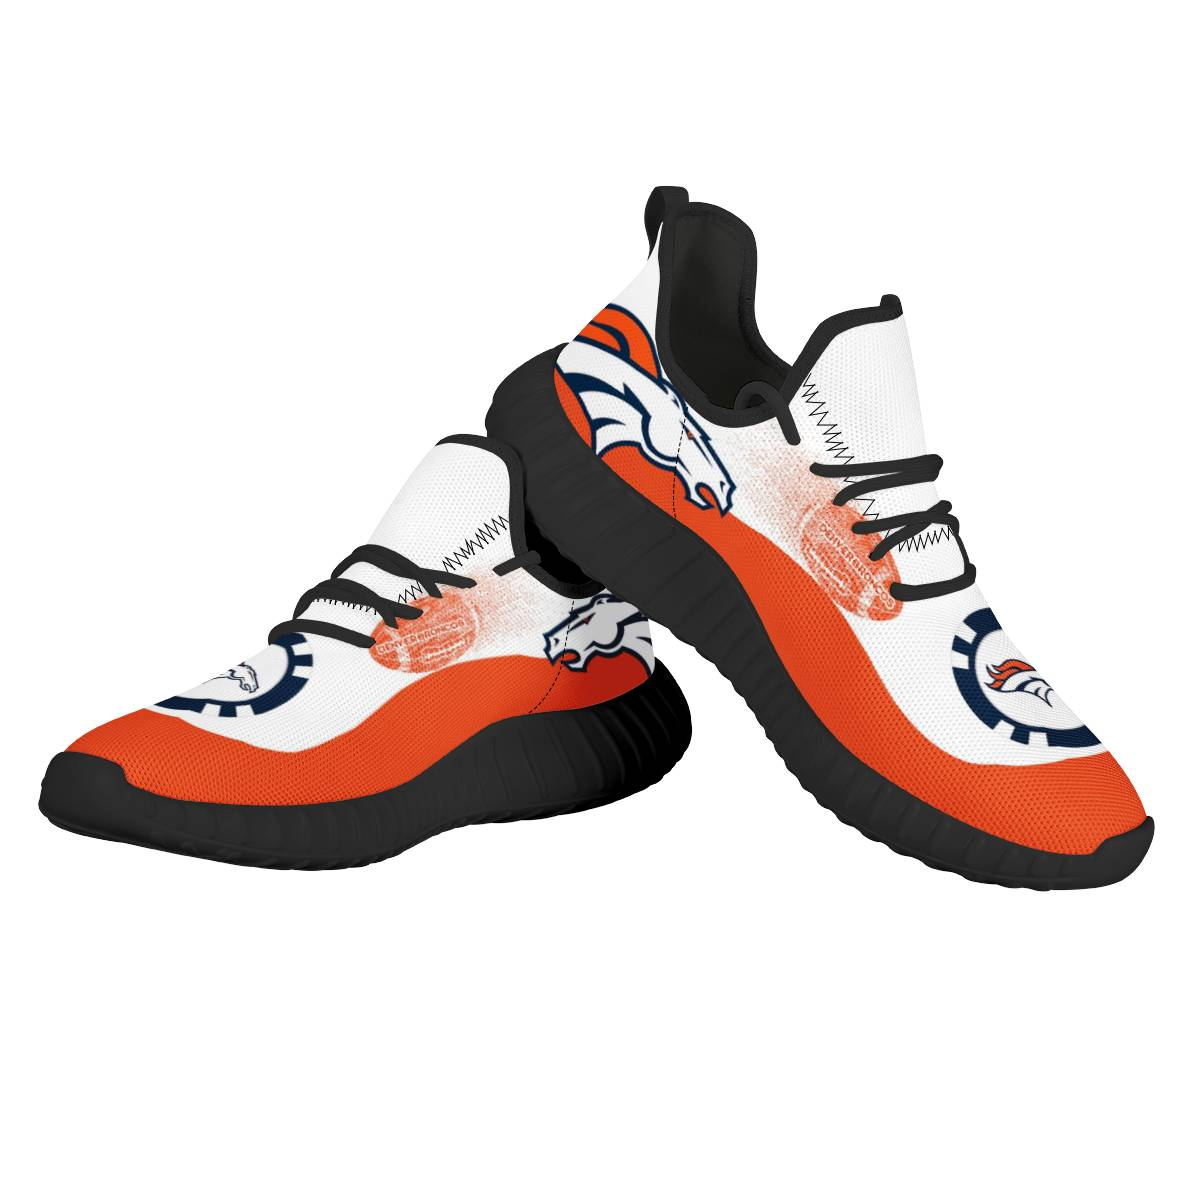 Women's NFL Denver Broncos Mesh Knit Sneakers/Shoes 006